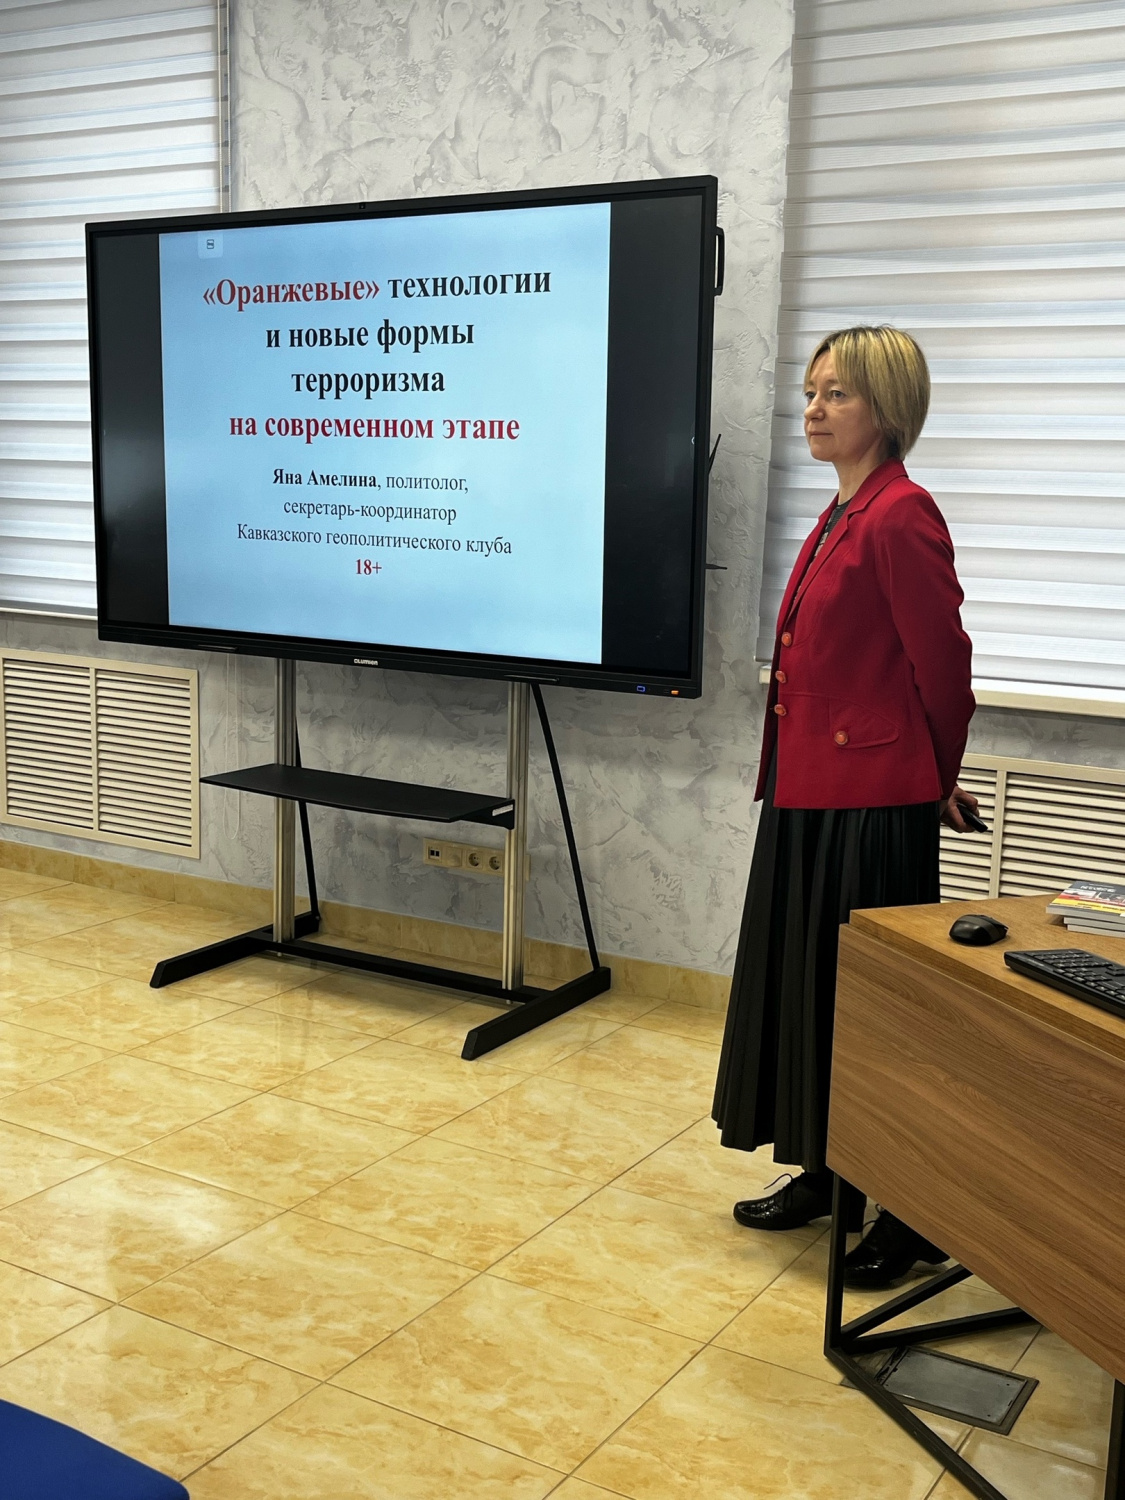 Во Владимире прошёл семинар-совещание на тему: "Оранжевые технологии и новые формы терроризма на современном этапе"